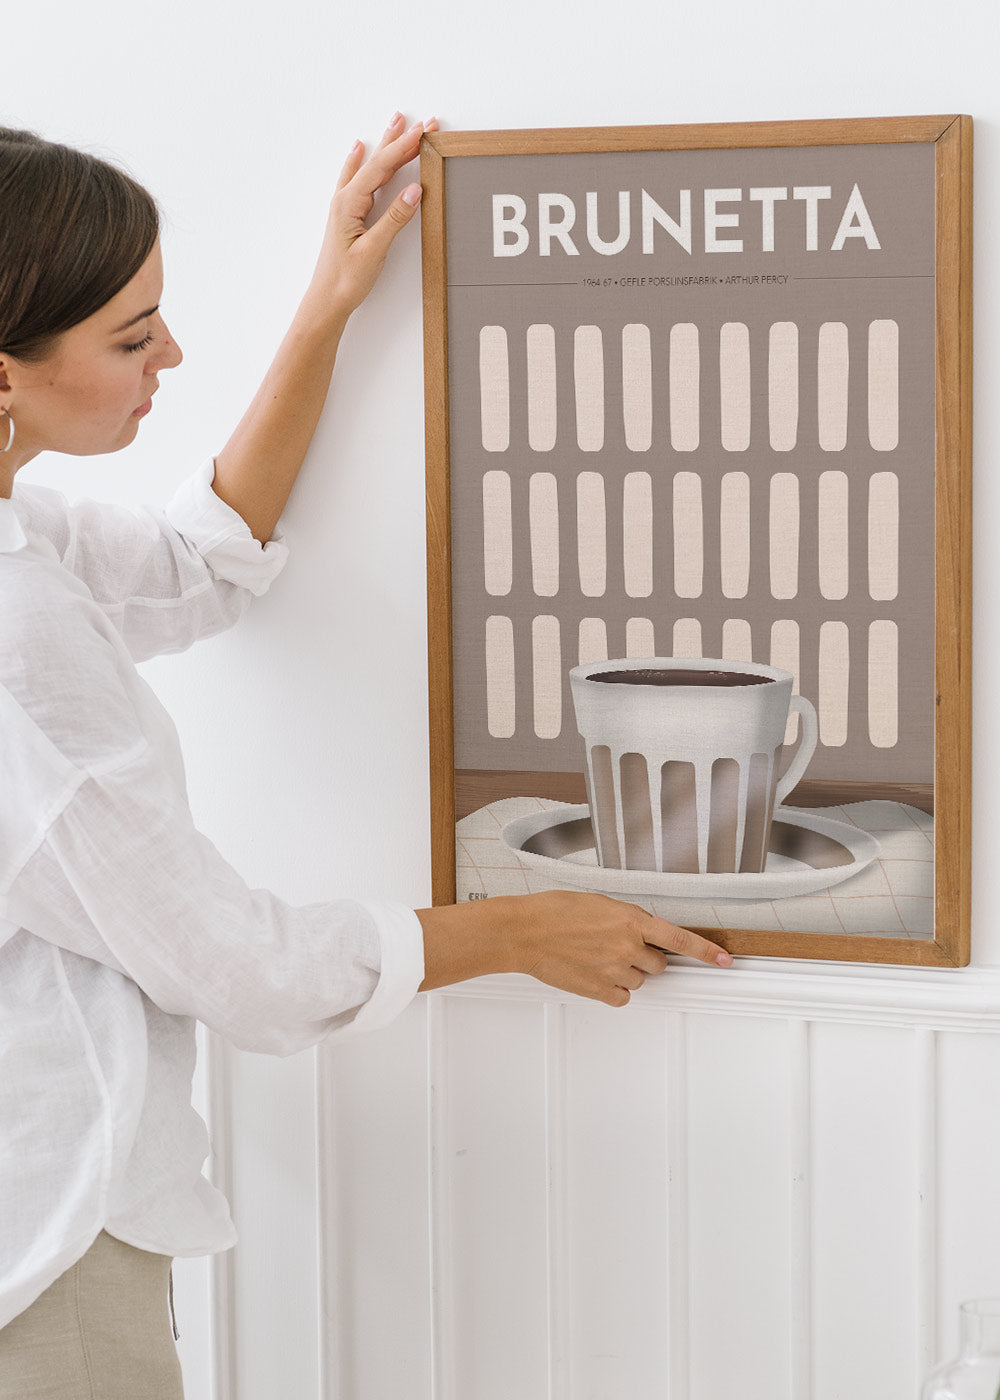 Brunetta, kaffekopp poster av Erik Fläder.